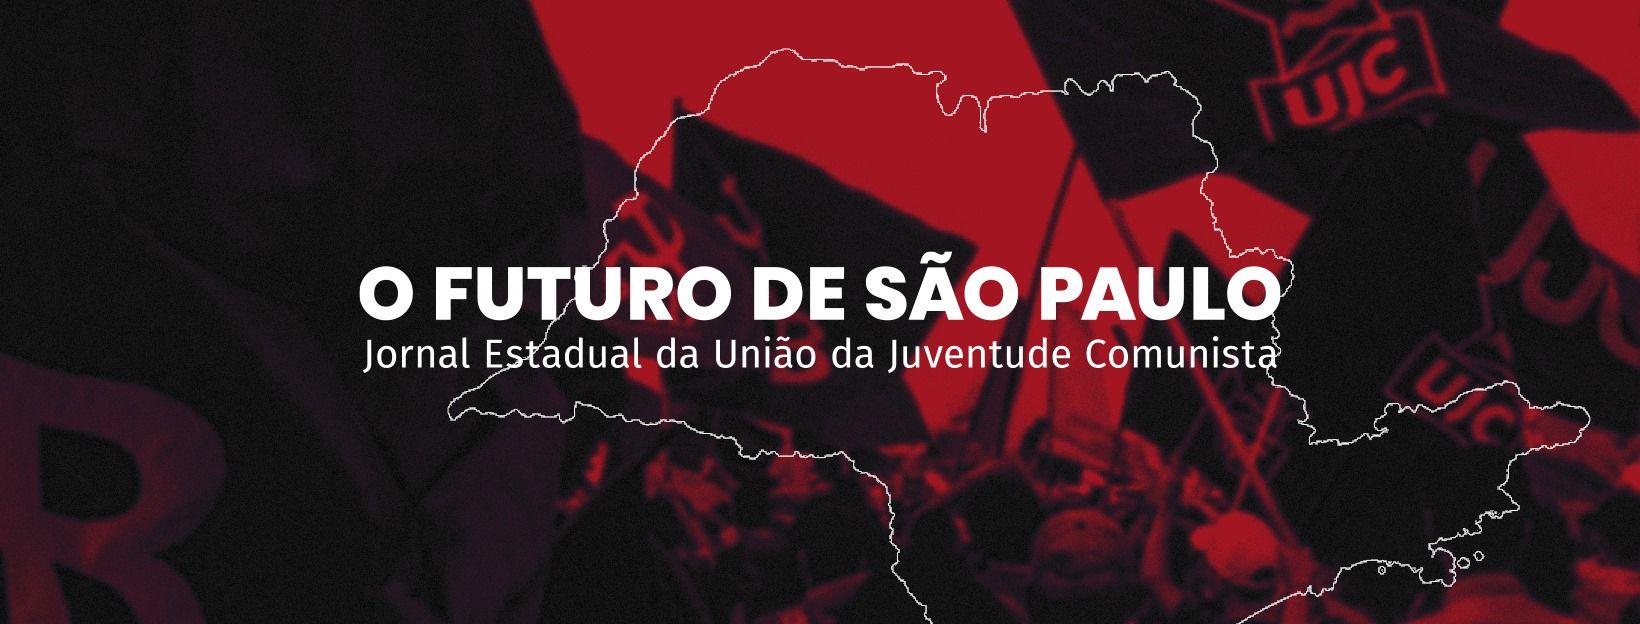 Empresas roubam o futebol dos torcedores na Libertadores da América